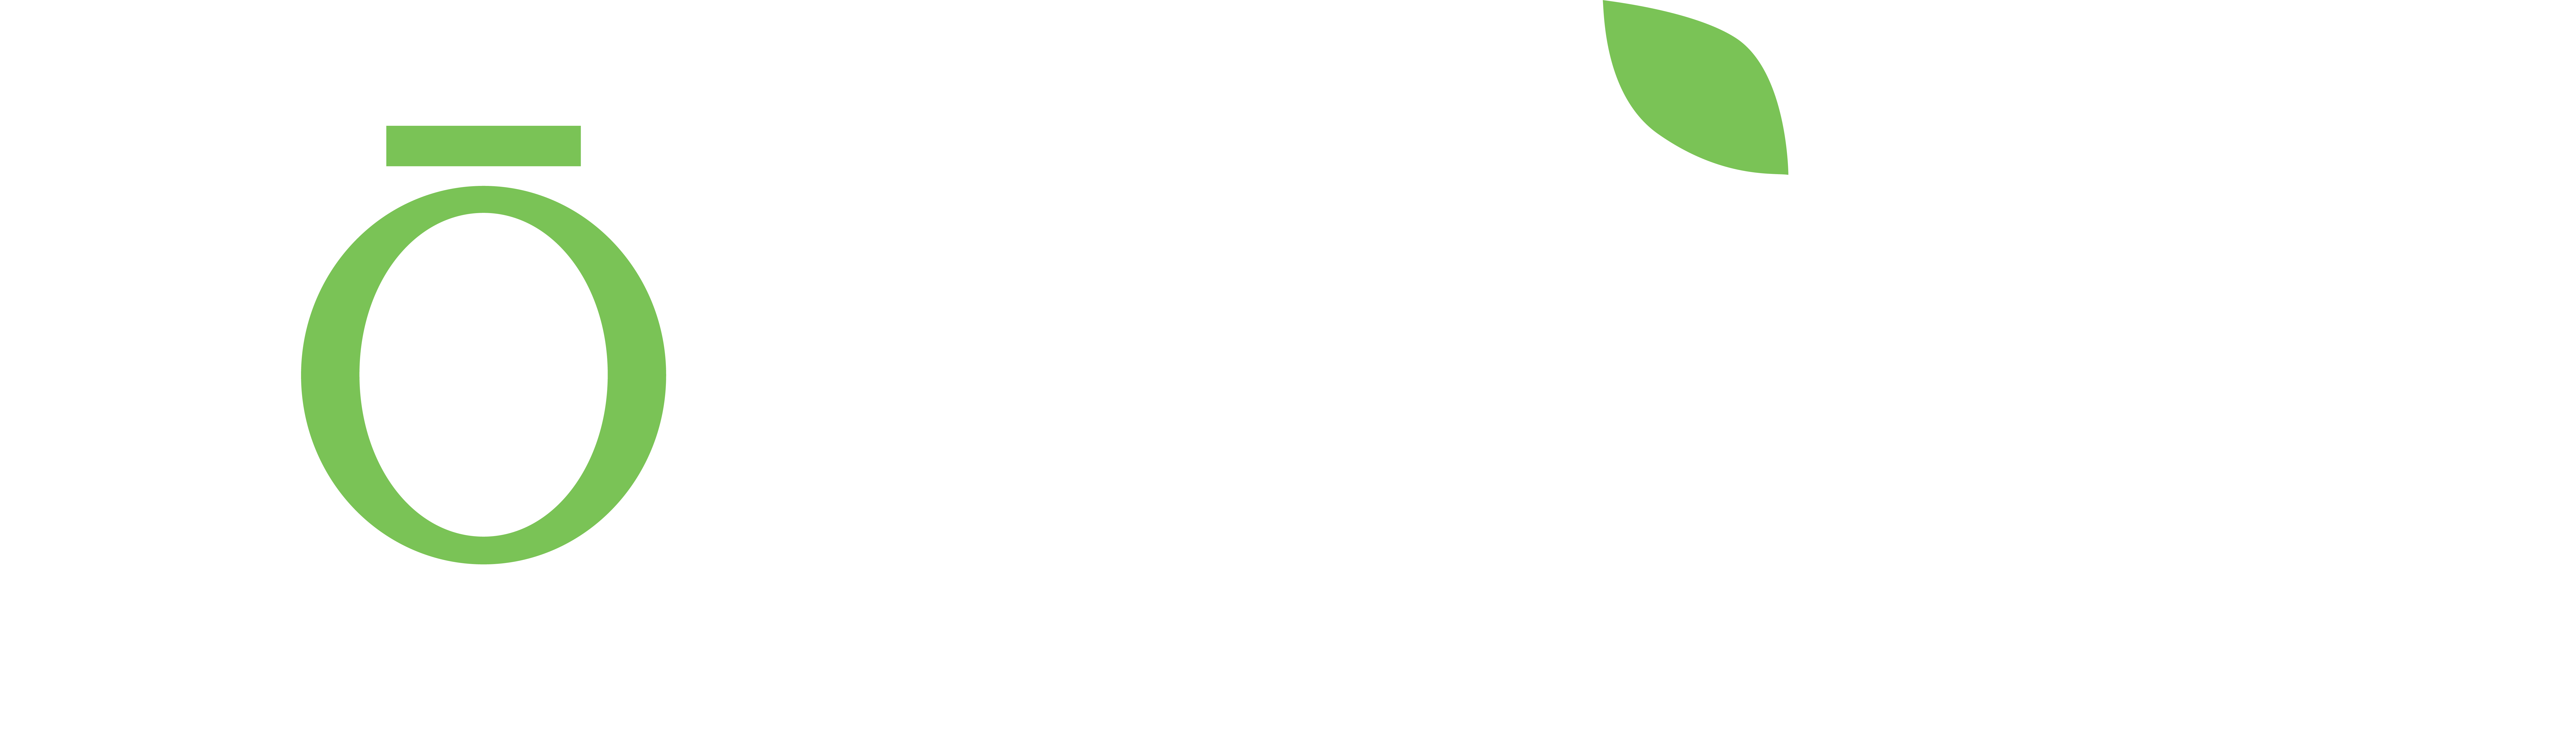 Fōmcore Logo 2022 White Green